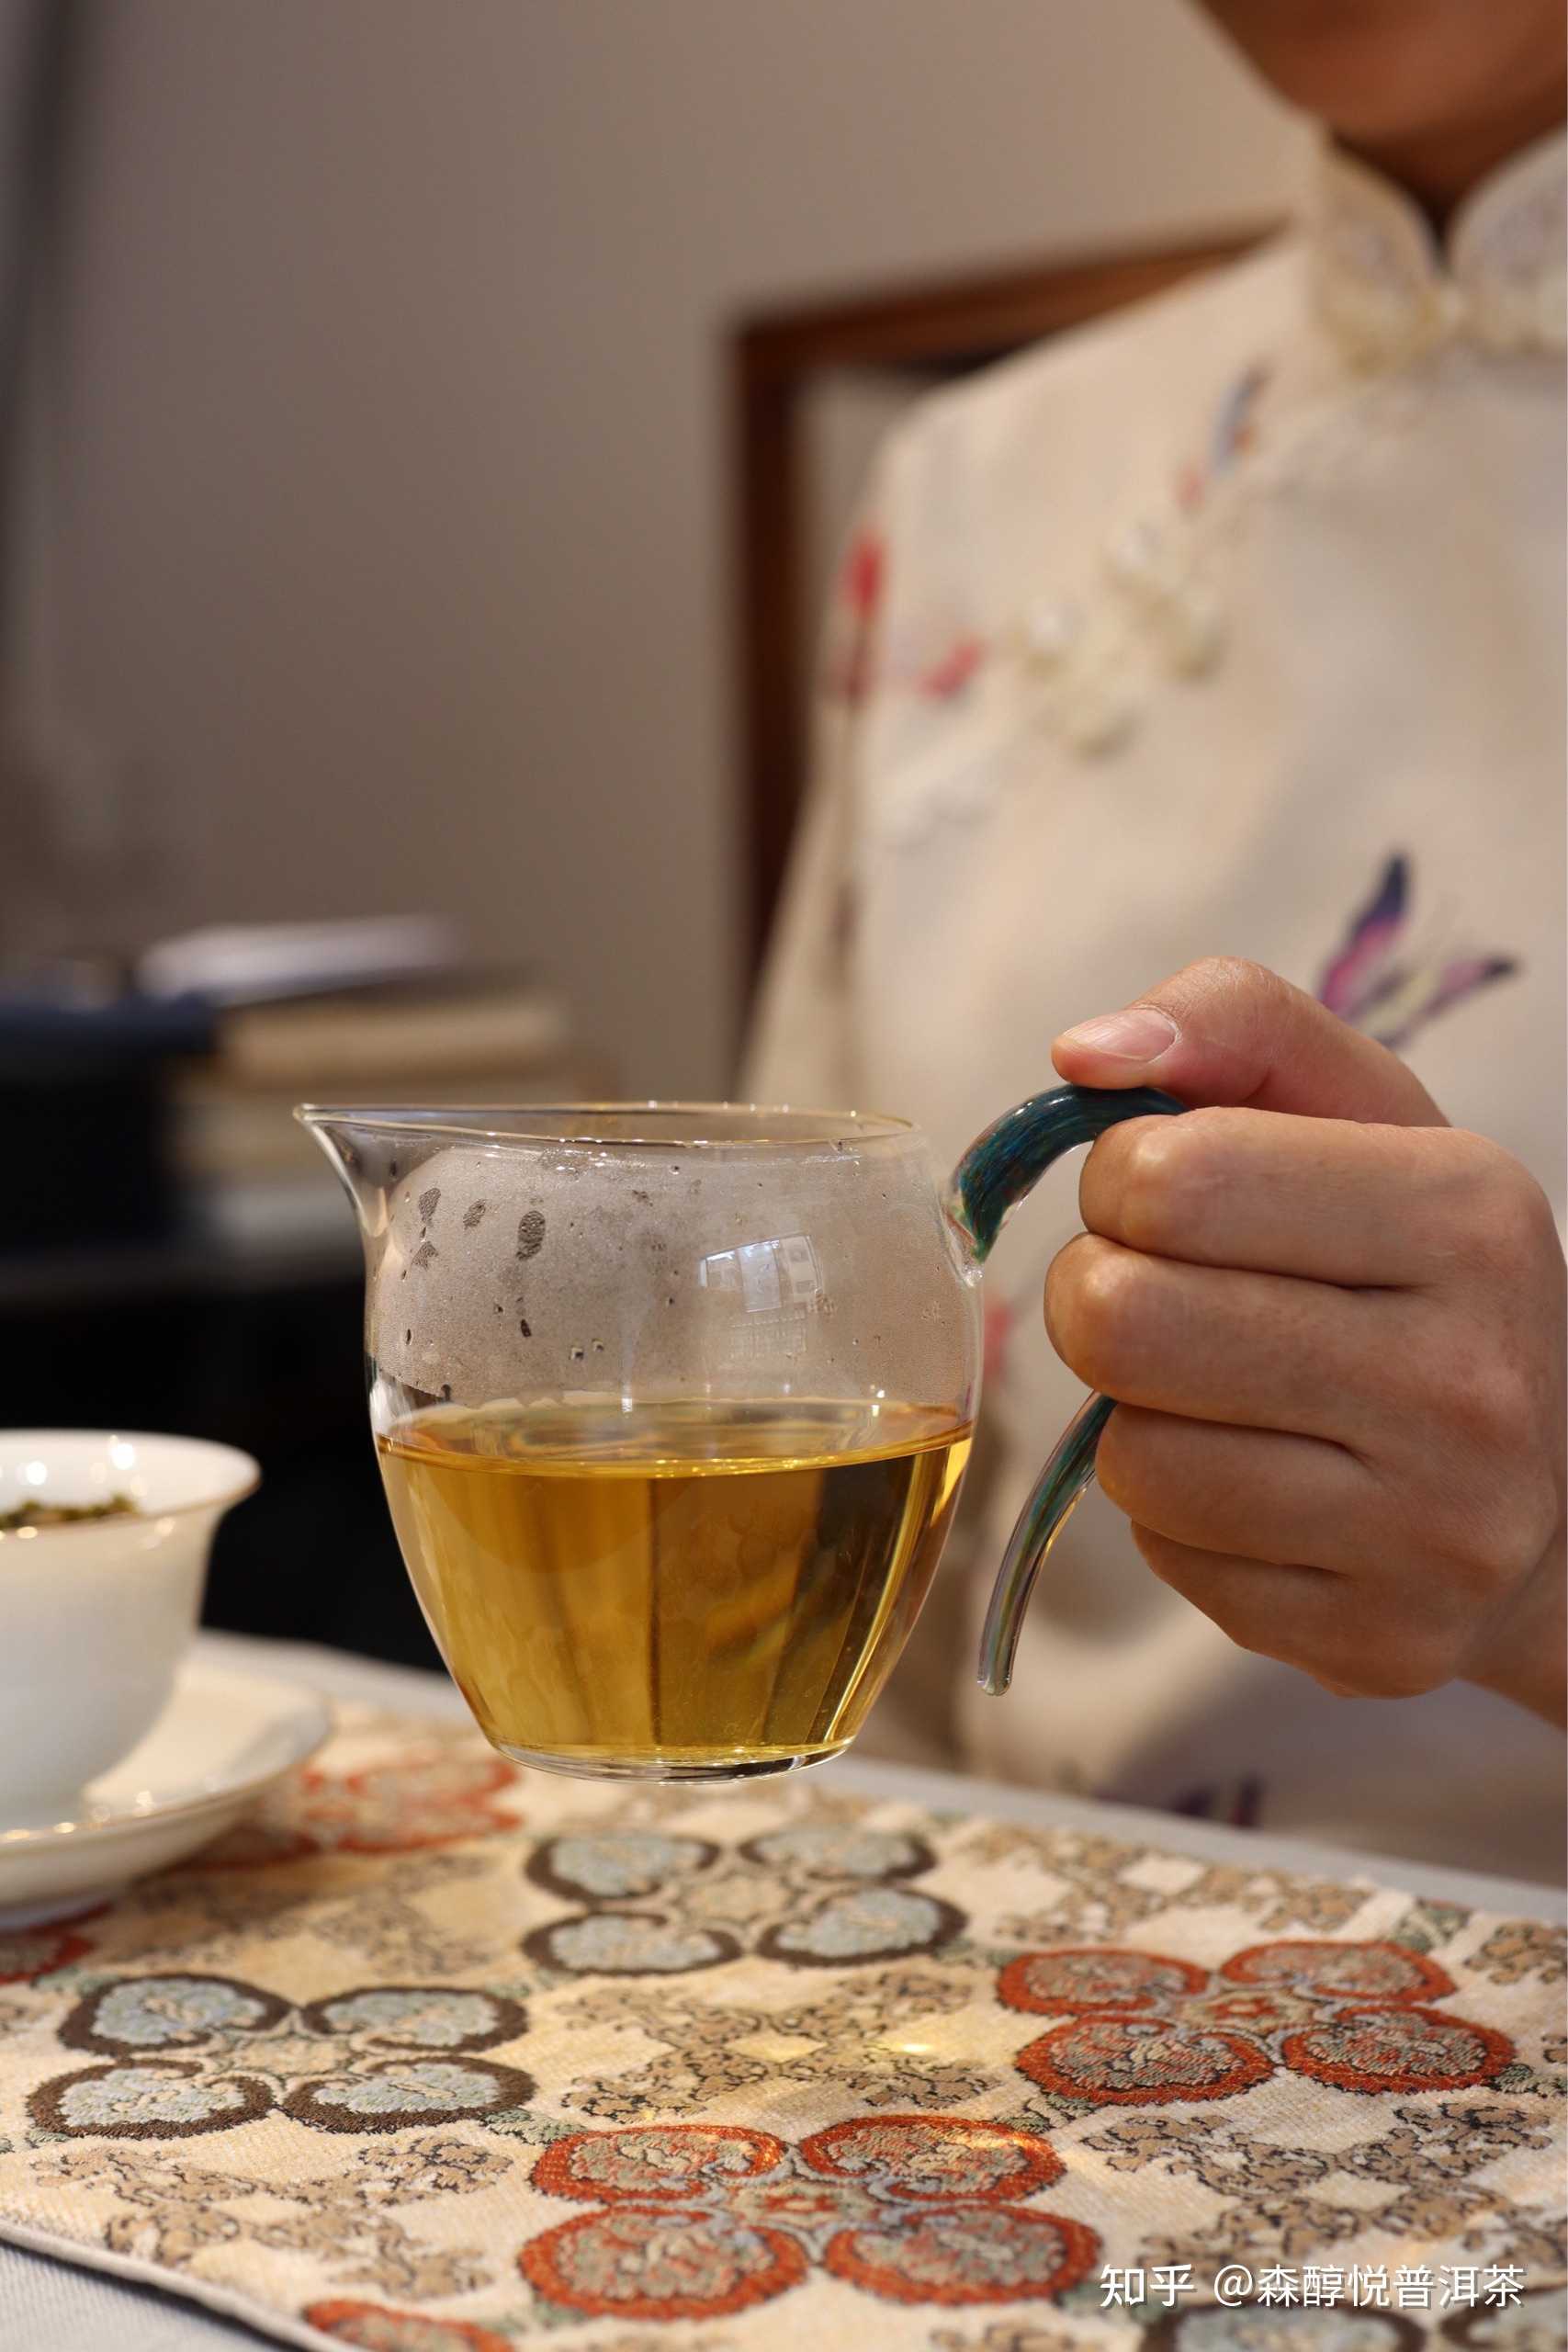 森醇悦普洱茶 的想法: 一年四季,茶香四溢 一个人时,在一杯茶